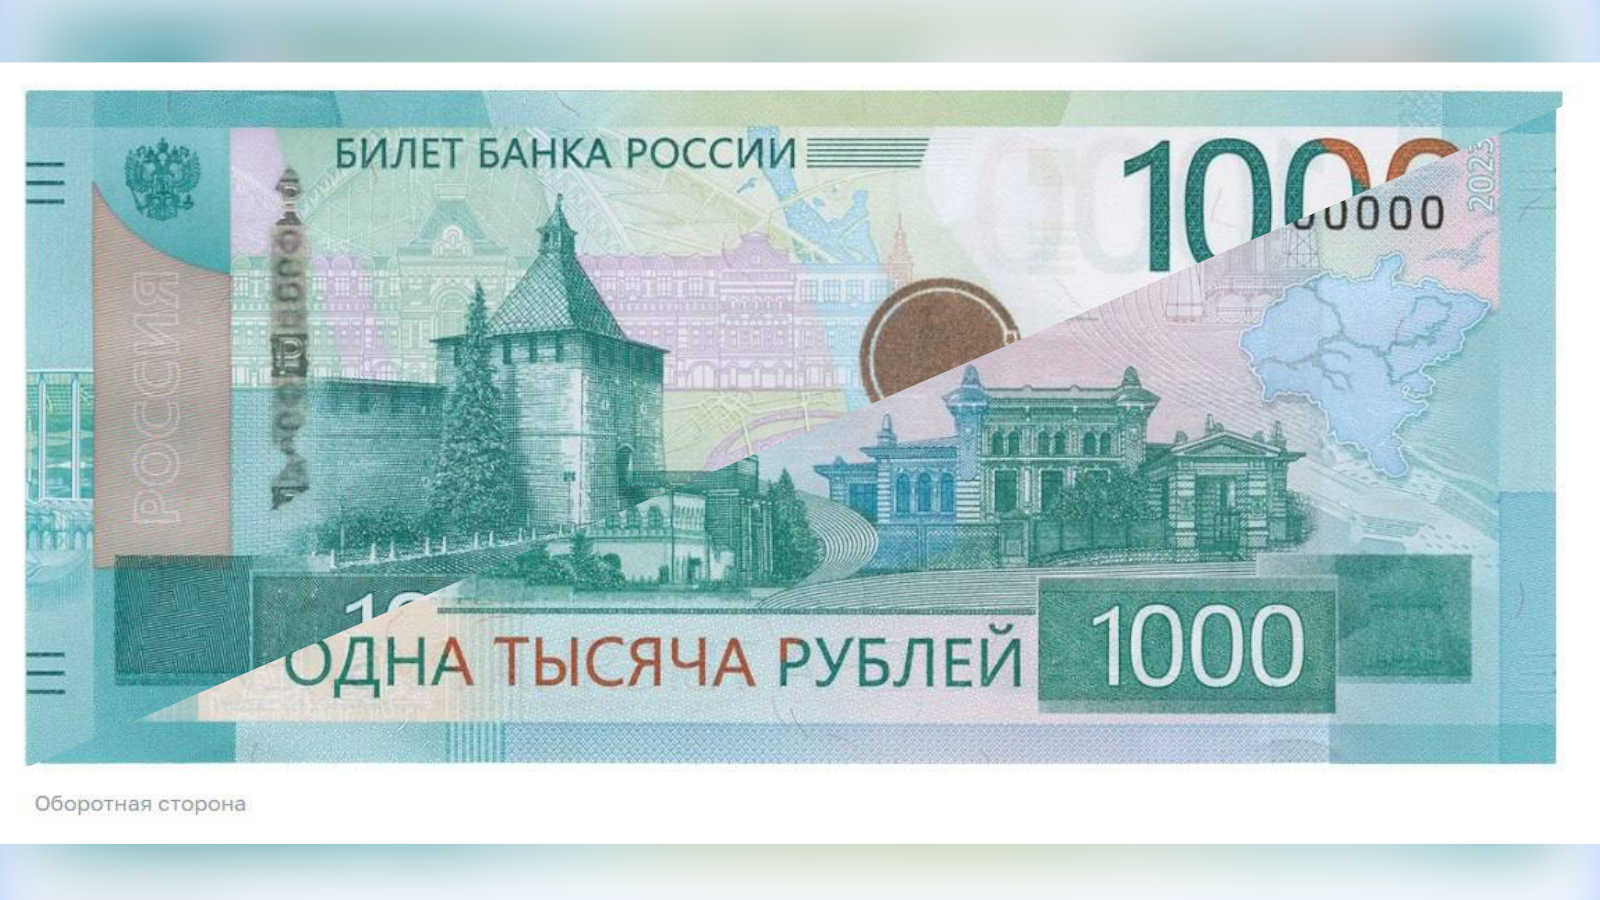 Pénz, amelyre mindenképpen érdemes emlékeztetni, hogy az Idel-Ural köztársaságok nem Oroszország